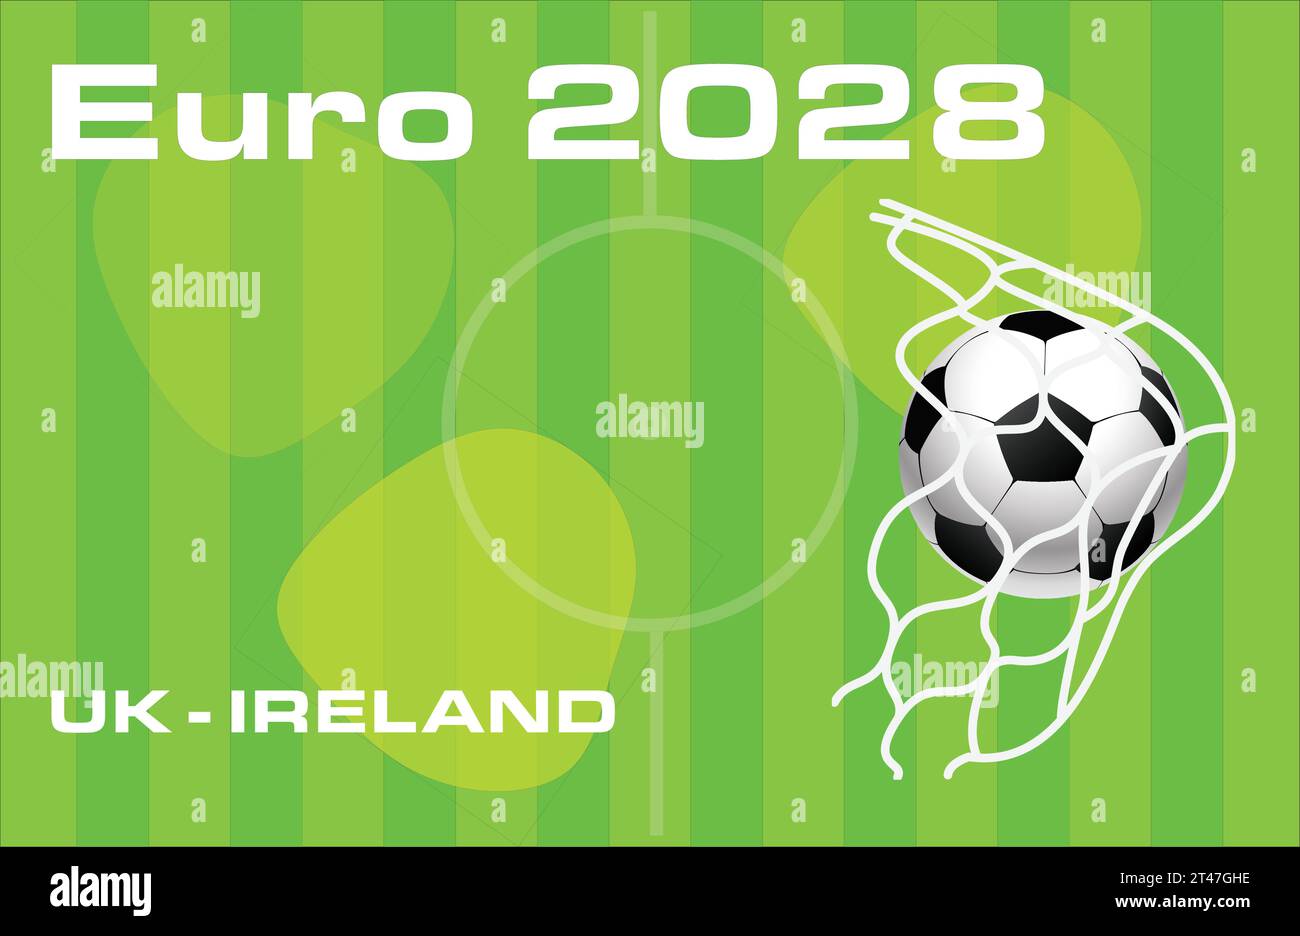 Championnat d'Europe de football Euro 2028 au Royaume-Uni et en Irlande - illustration vectorielle. Illustration de Vecteur